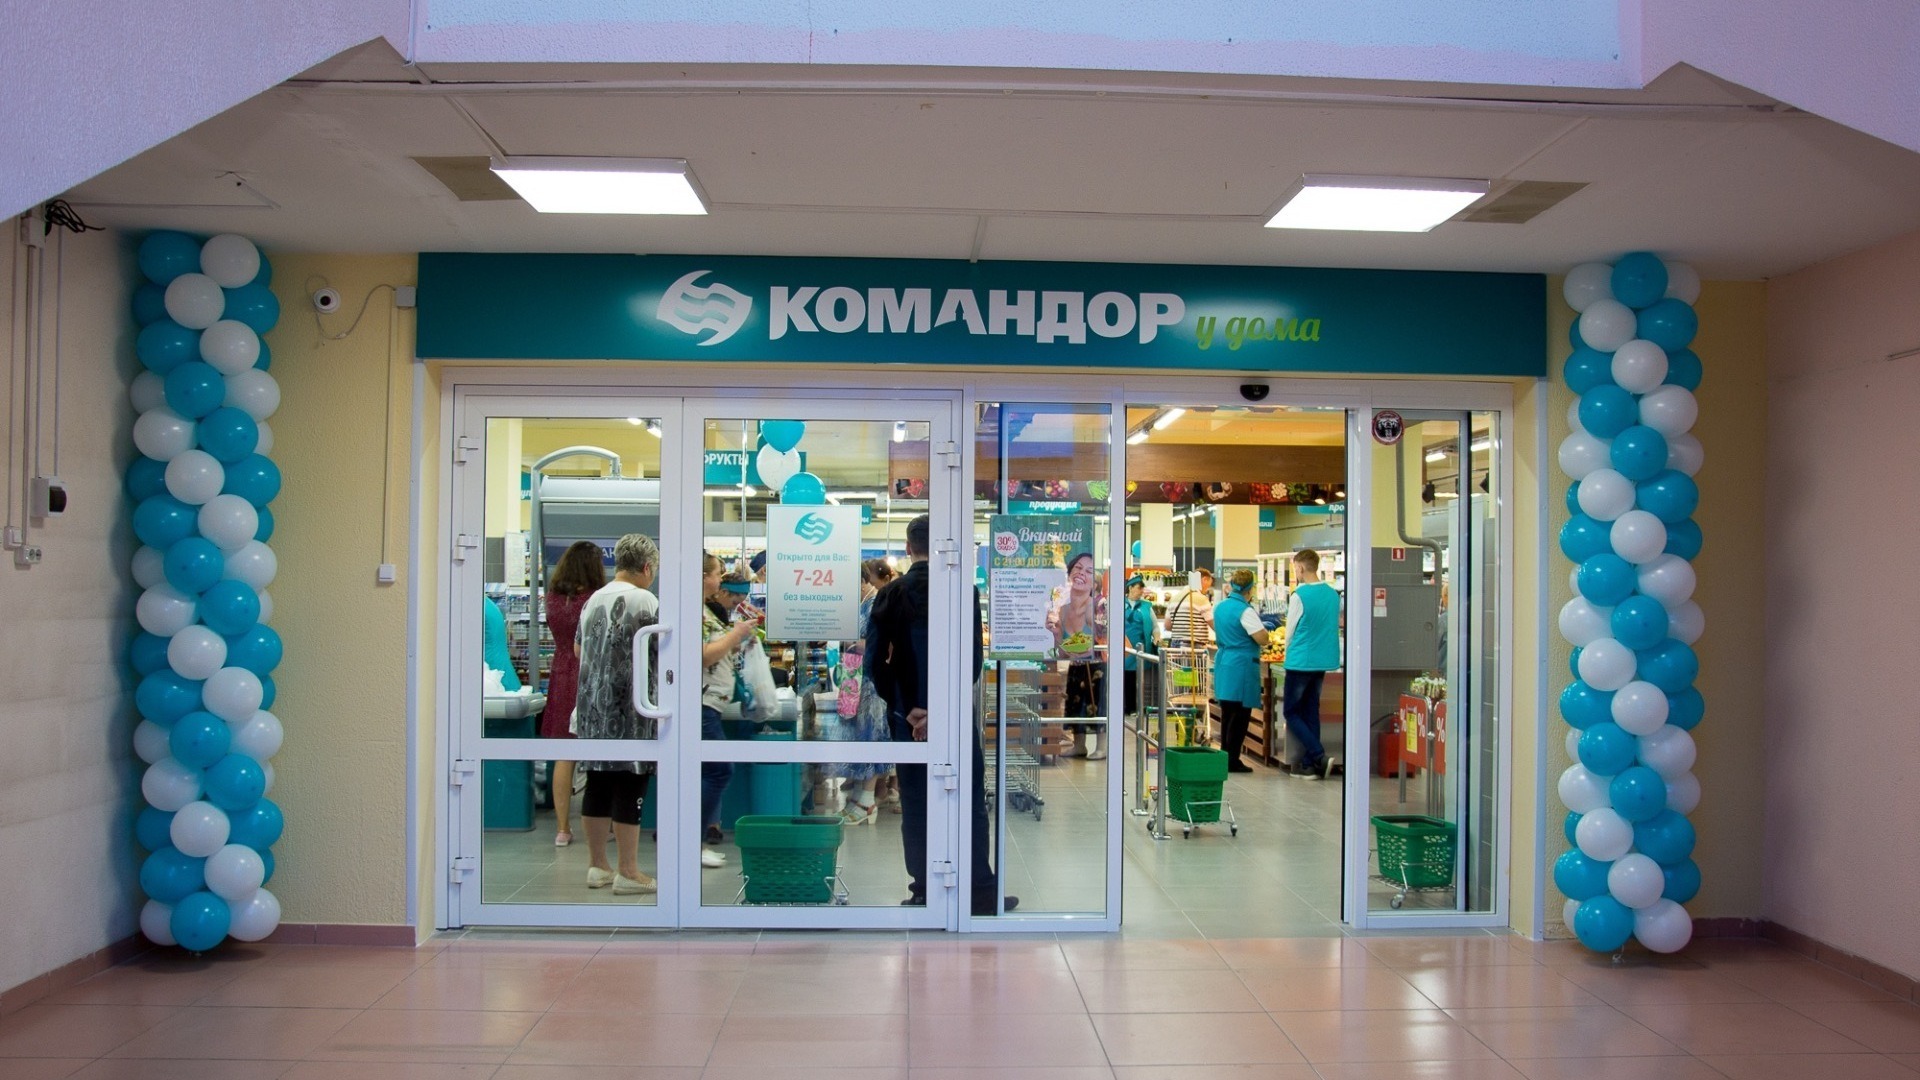 В магазинах сети «Командор» клиенты Сбера сняли около 29 миллионов рублей